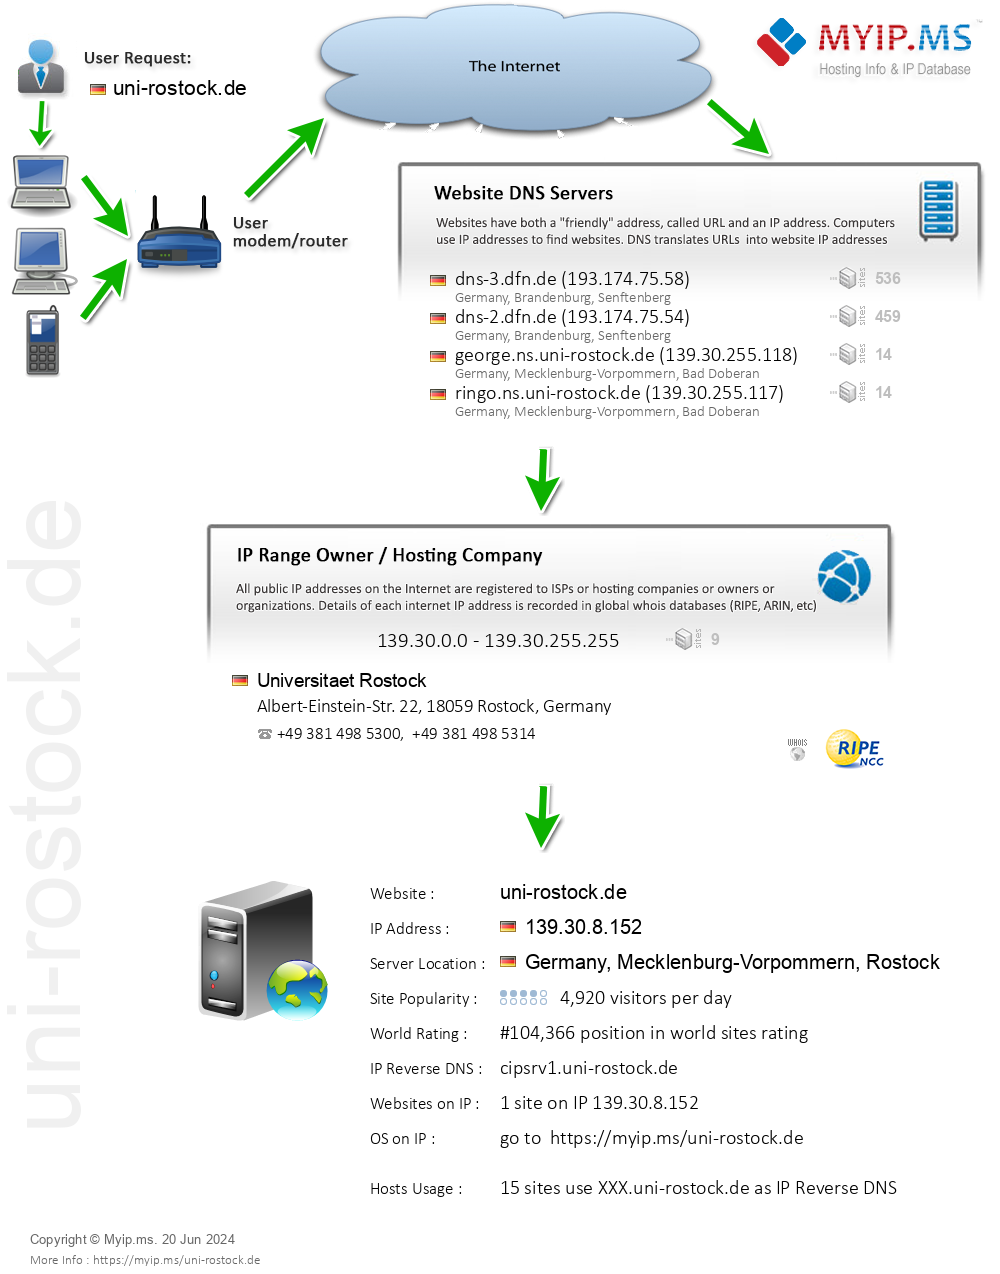 Uni-rostock.de - Website Hosting Visual IP Diagram